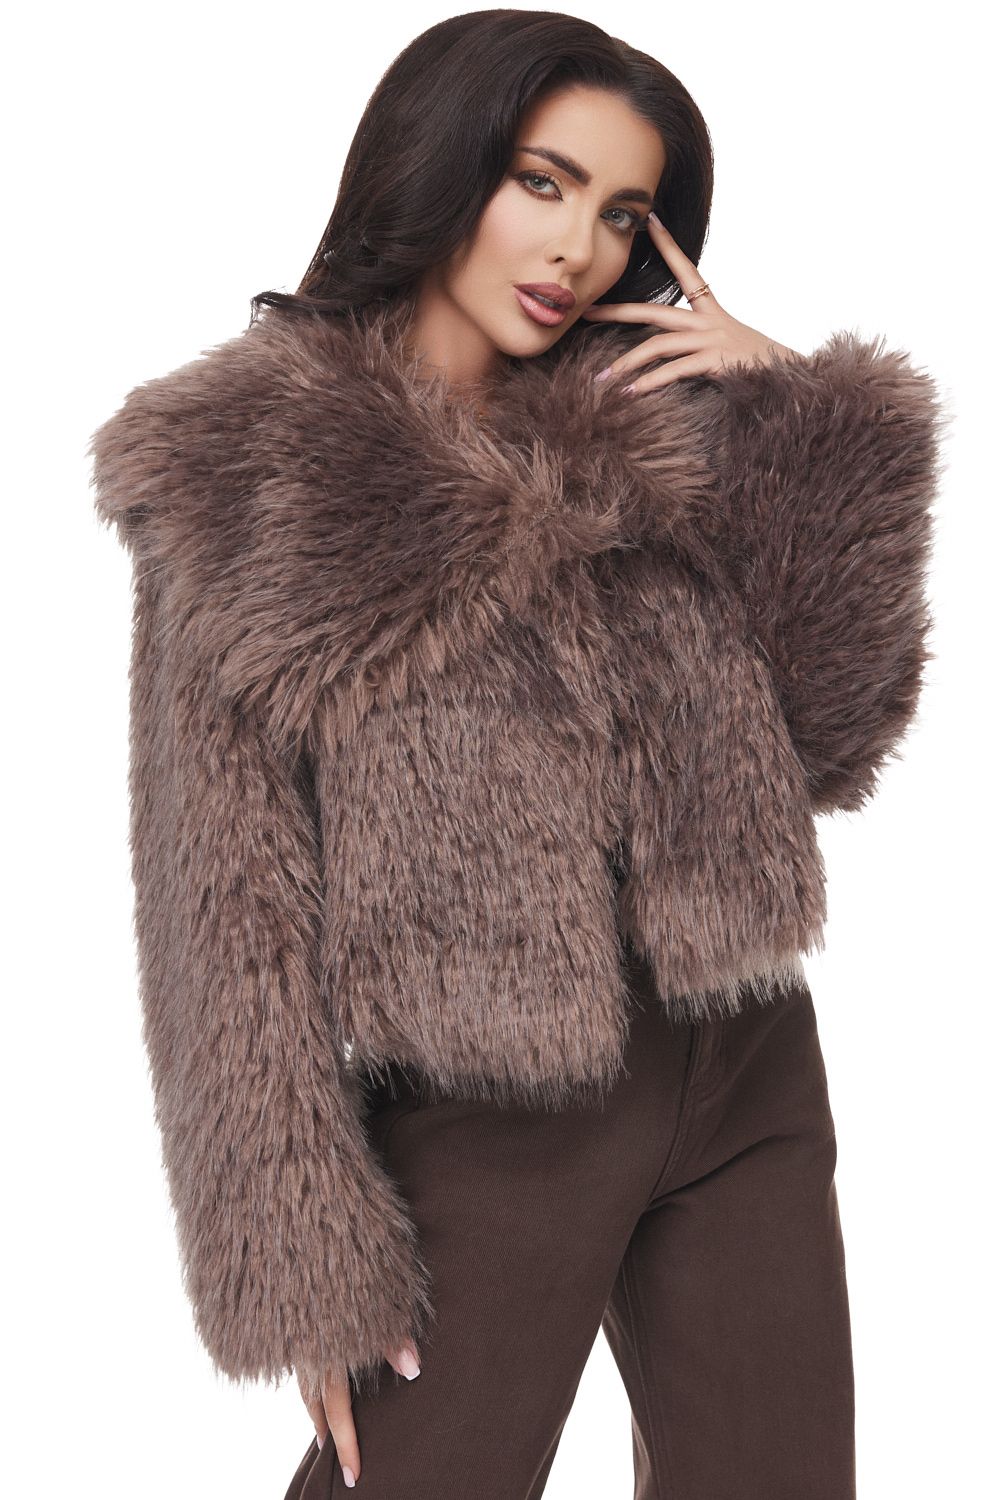 Laurete Bogas elegant brown fur coat